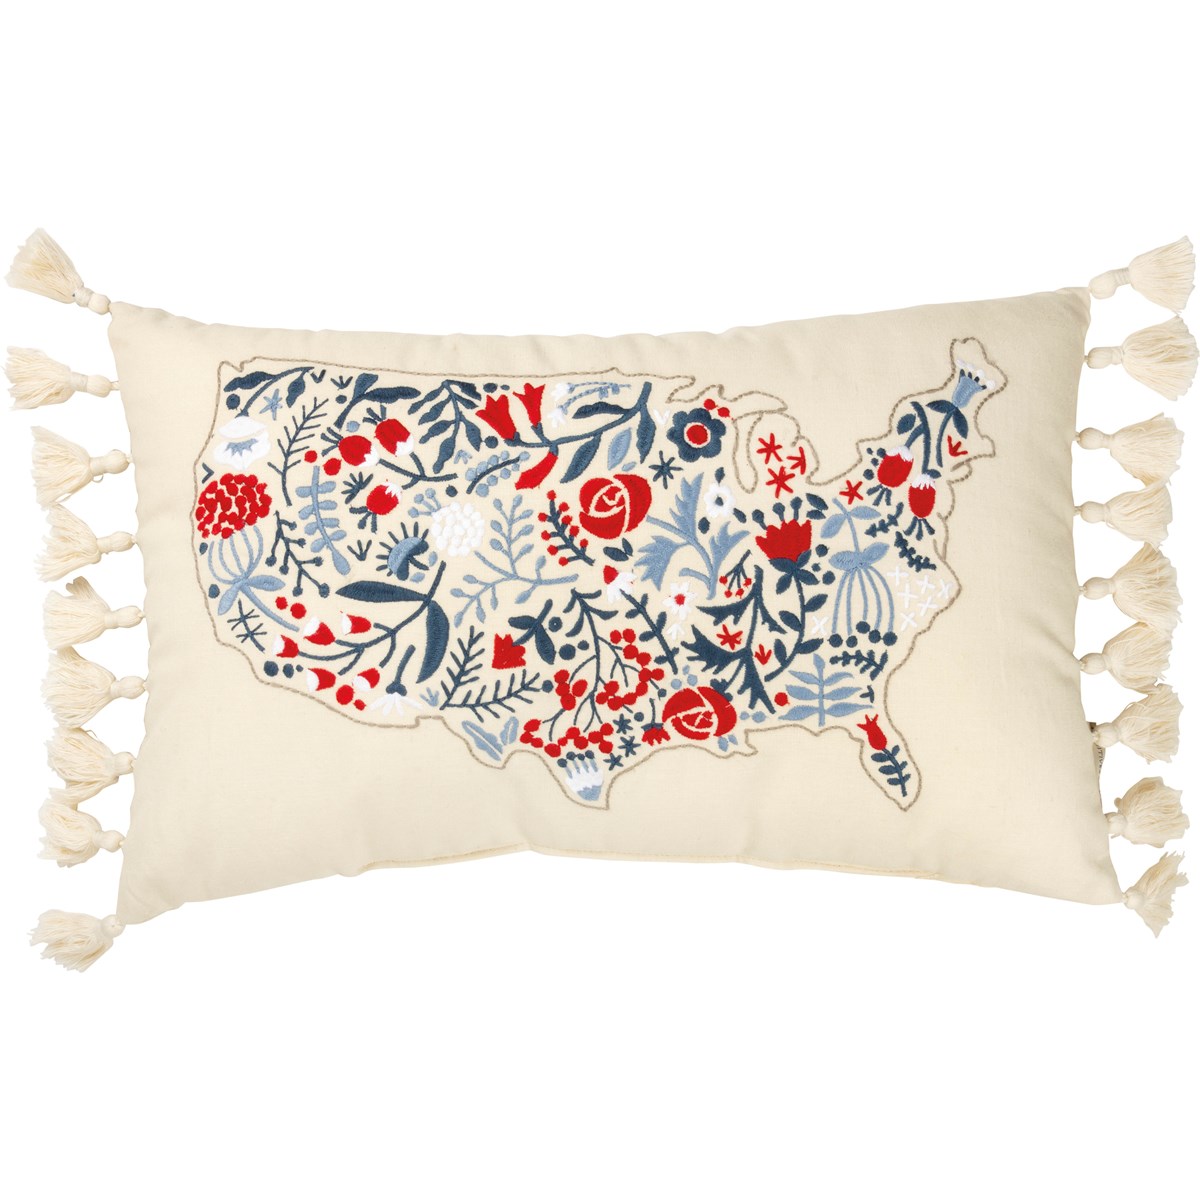 Floral USA Map Pillow - Cotton, Linen, Zipper